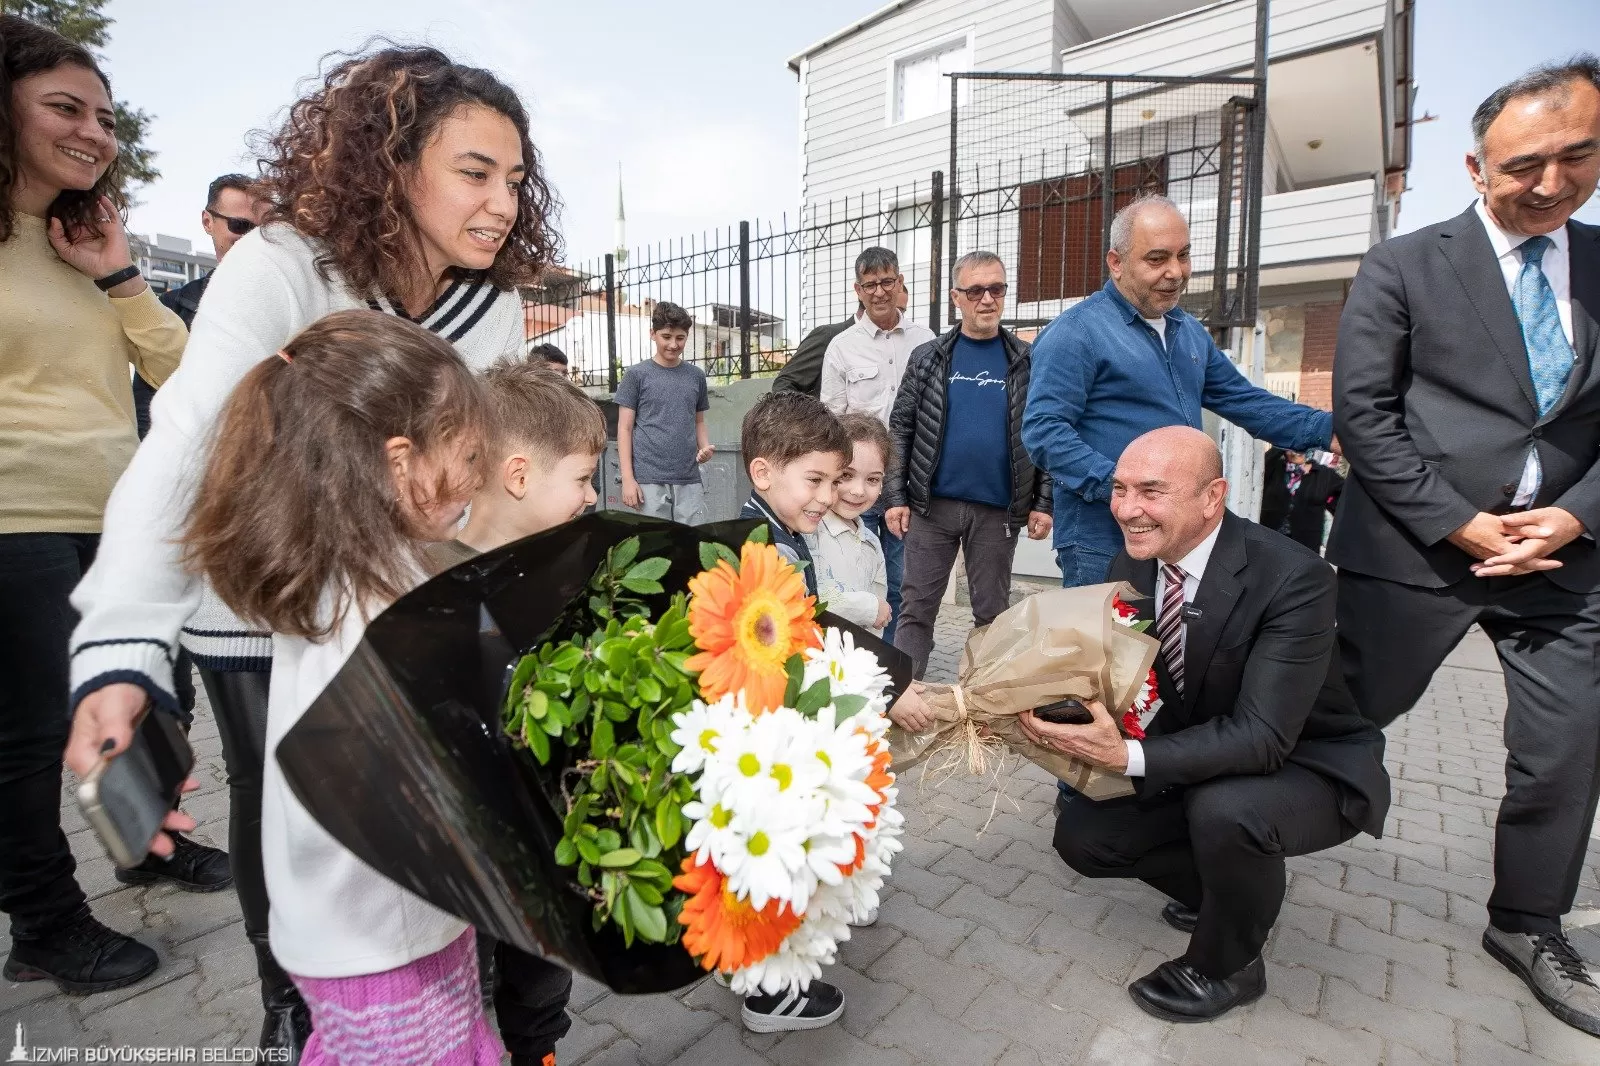 İzmir Büyükşehir Belediyesi, Bornova'daki Mediha Mahmut Bey Ortaokulu'nda Türkiye'nin ilk sünger okulu uygulamasını tamamladı.